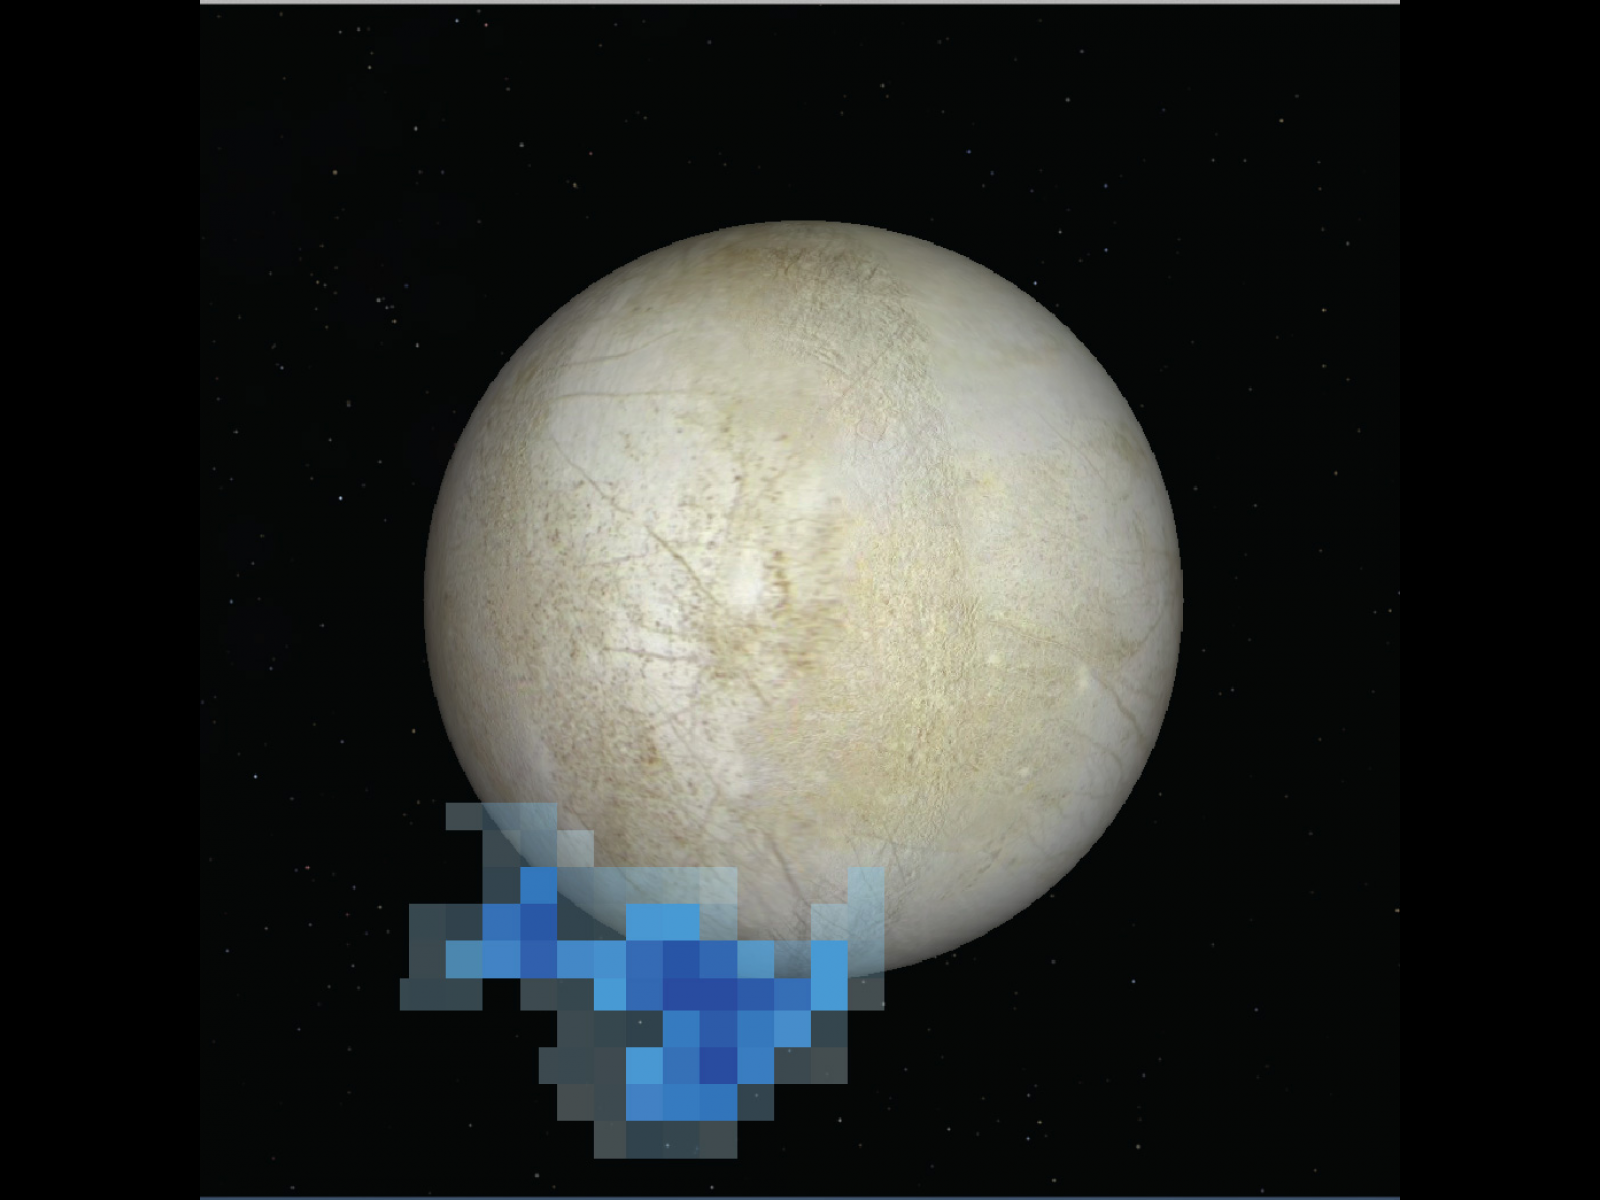 вода на Европе Юпитер спутник